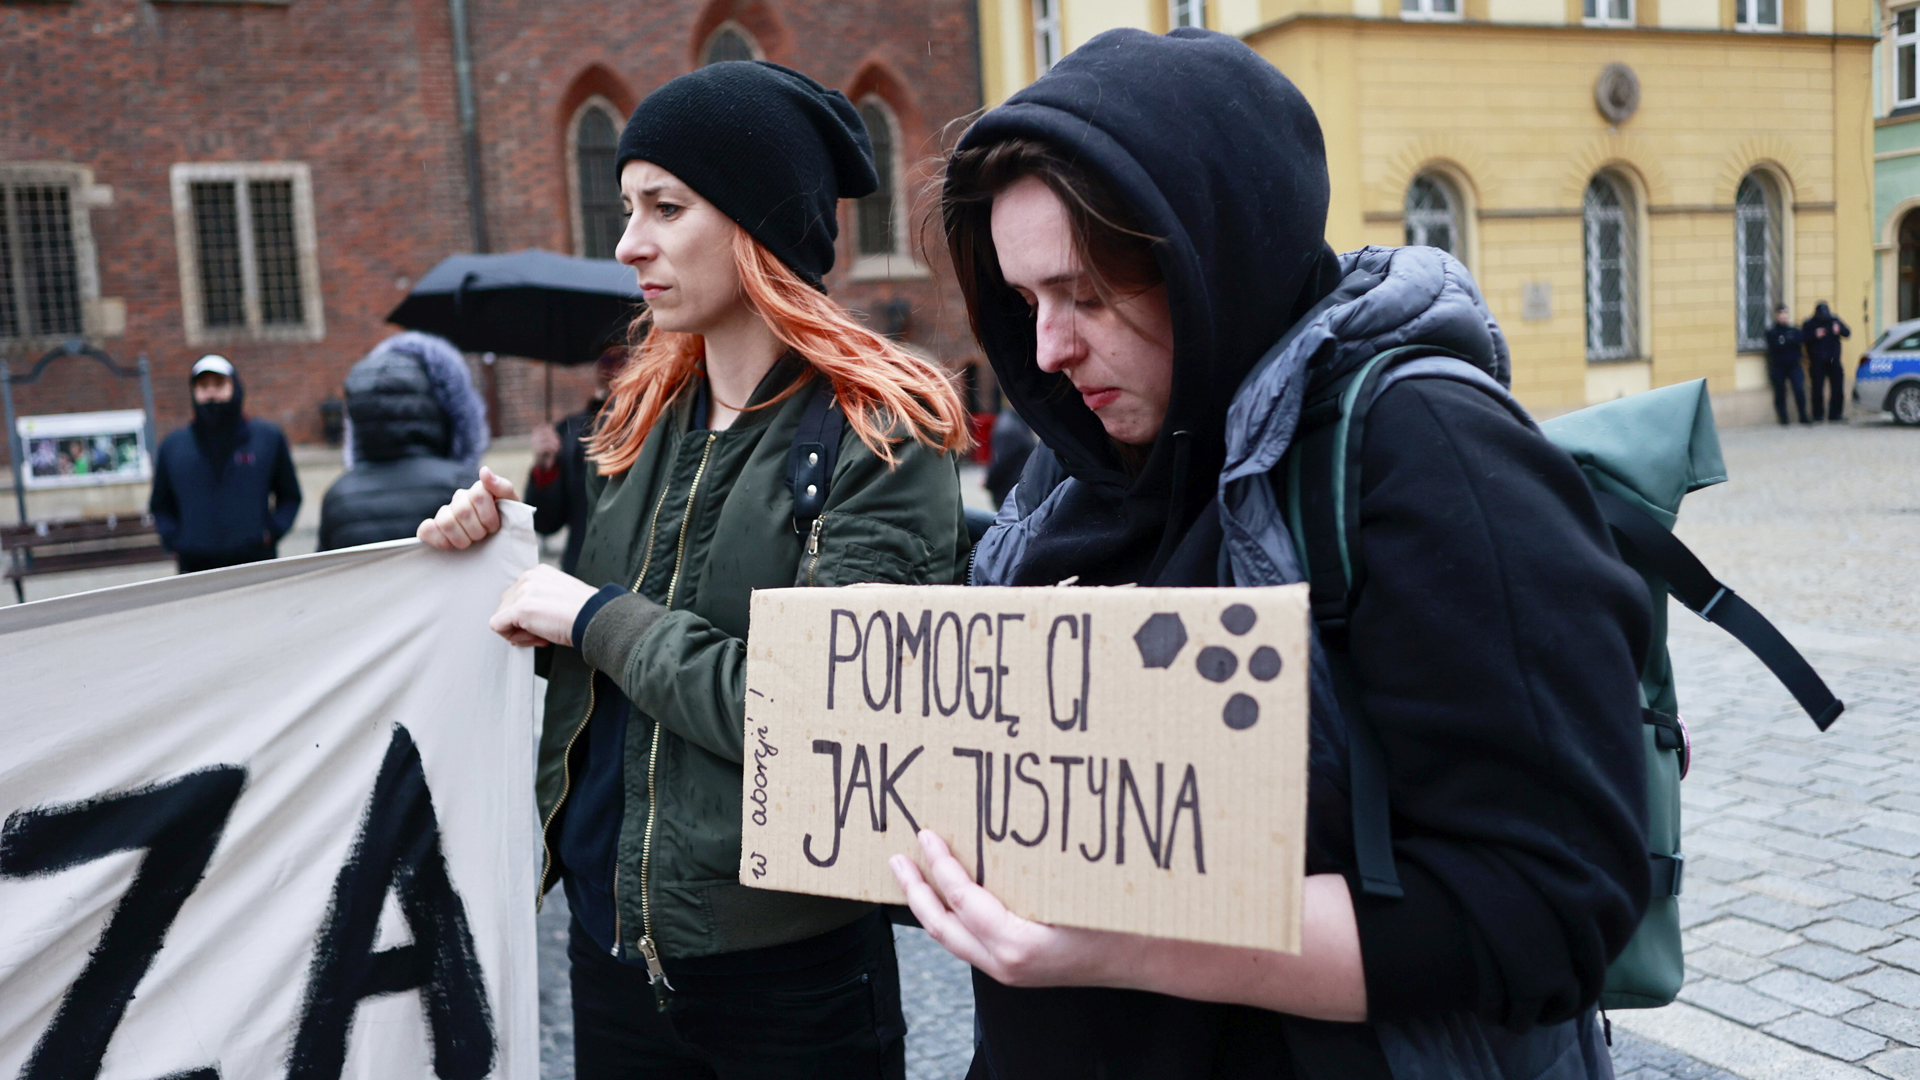 "Ich helfe dir wie Justyna", verspricht eine Aktivistin bei einer Kundgebung in Wroclaw auf einem Plakat. | picture alliance / ZUMAPRESS.com